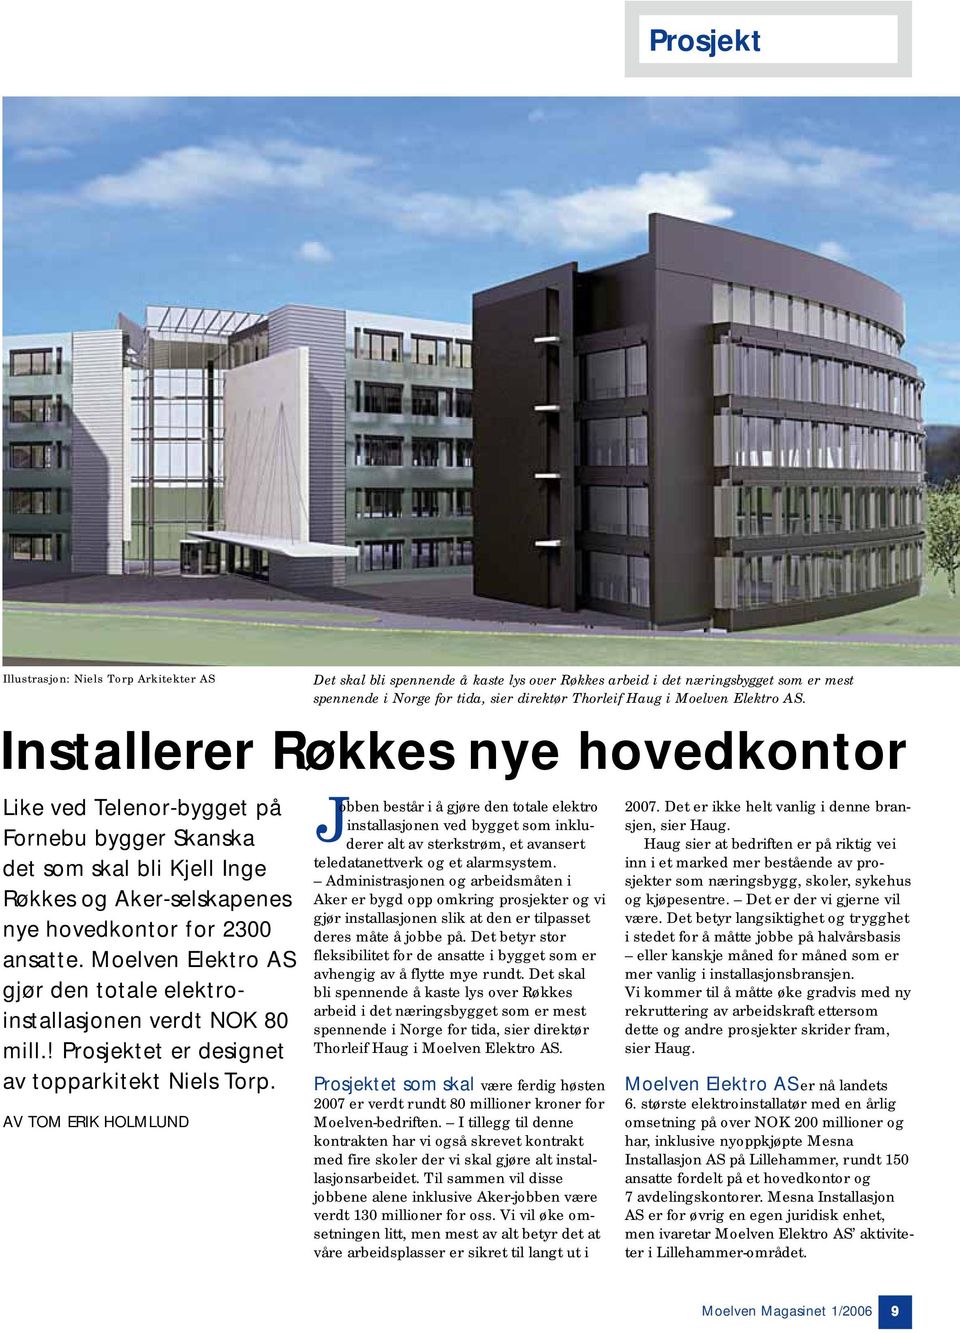 AV TOM ERIK HOLMLUND Det skal bli spennende å kaste lys over Røkkes arbeid i det næringsbygget som er mest spennende i Norge for tida, sier direktør Thorleif Haug i Moelven Elektro AS.